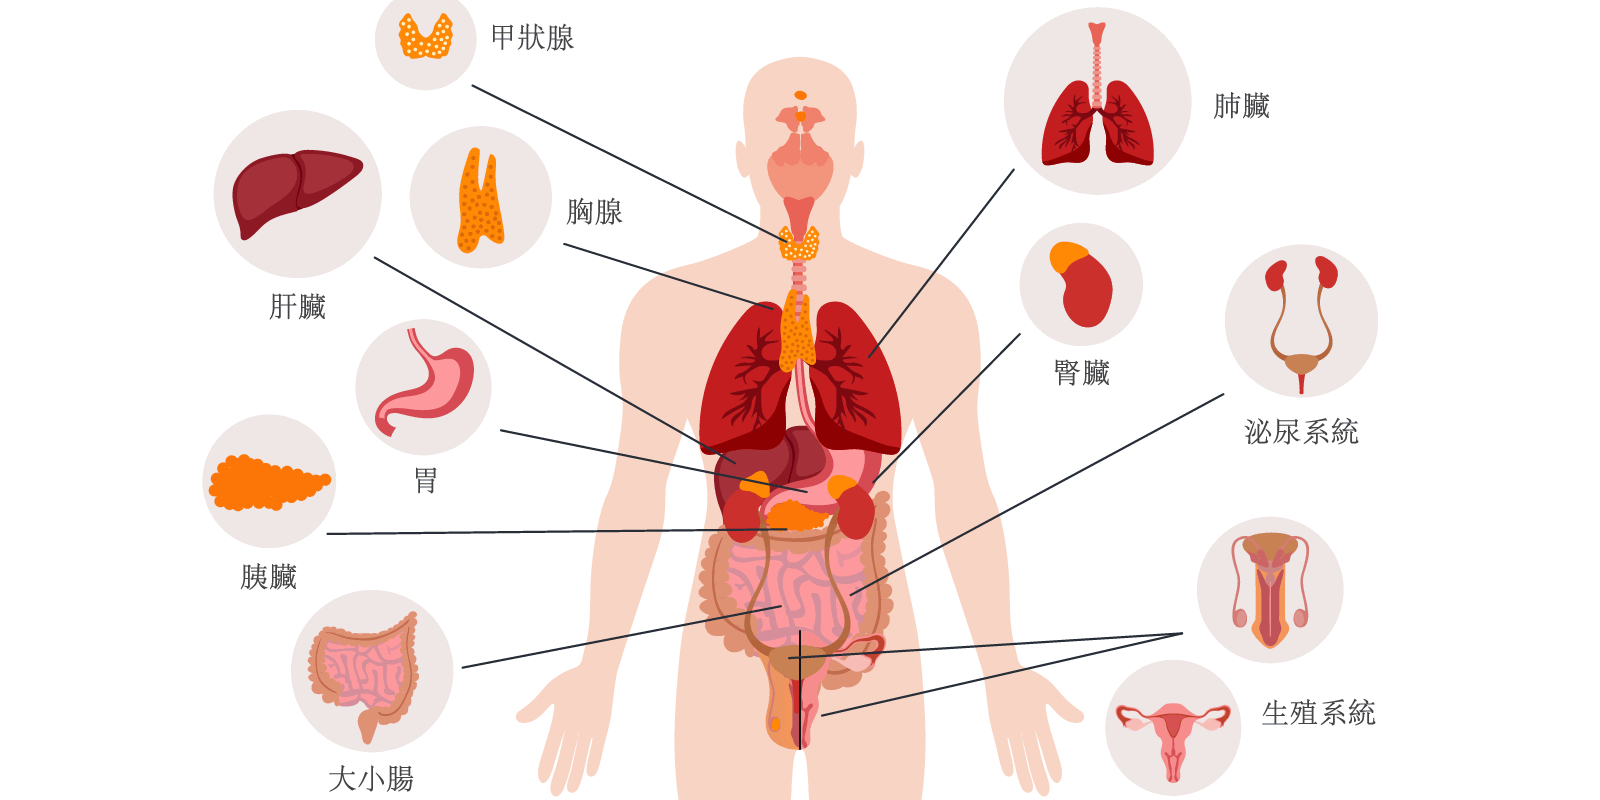 身體臟腑系統結構圖